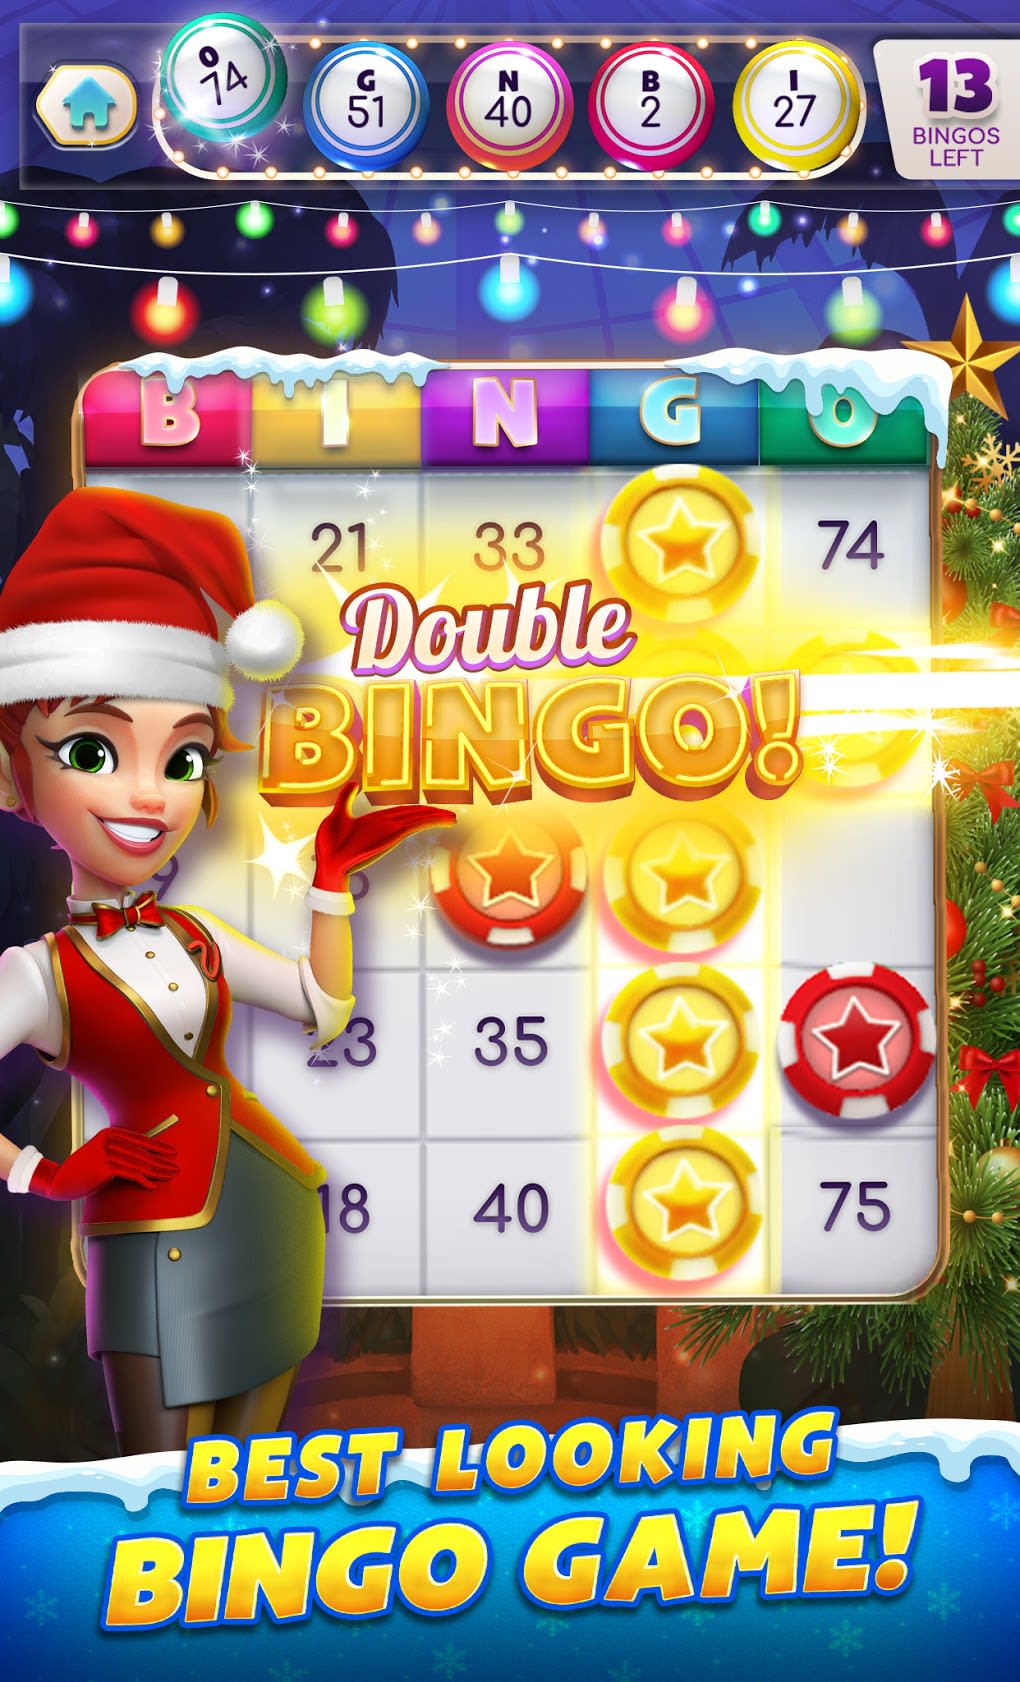 myvegas-bingo-social-casino-fun-bingo-games-apk-para-android-download